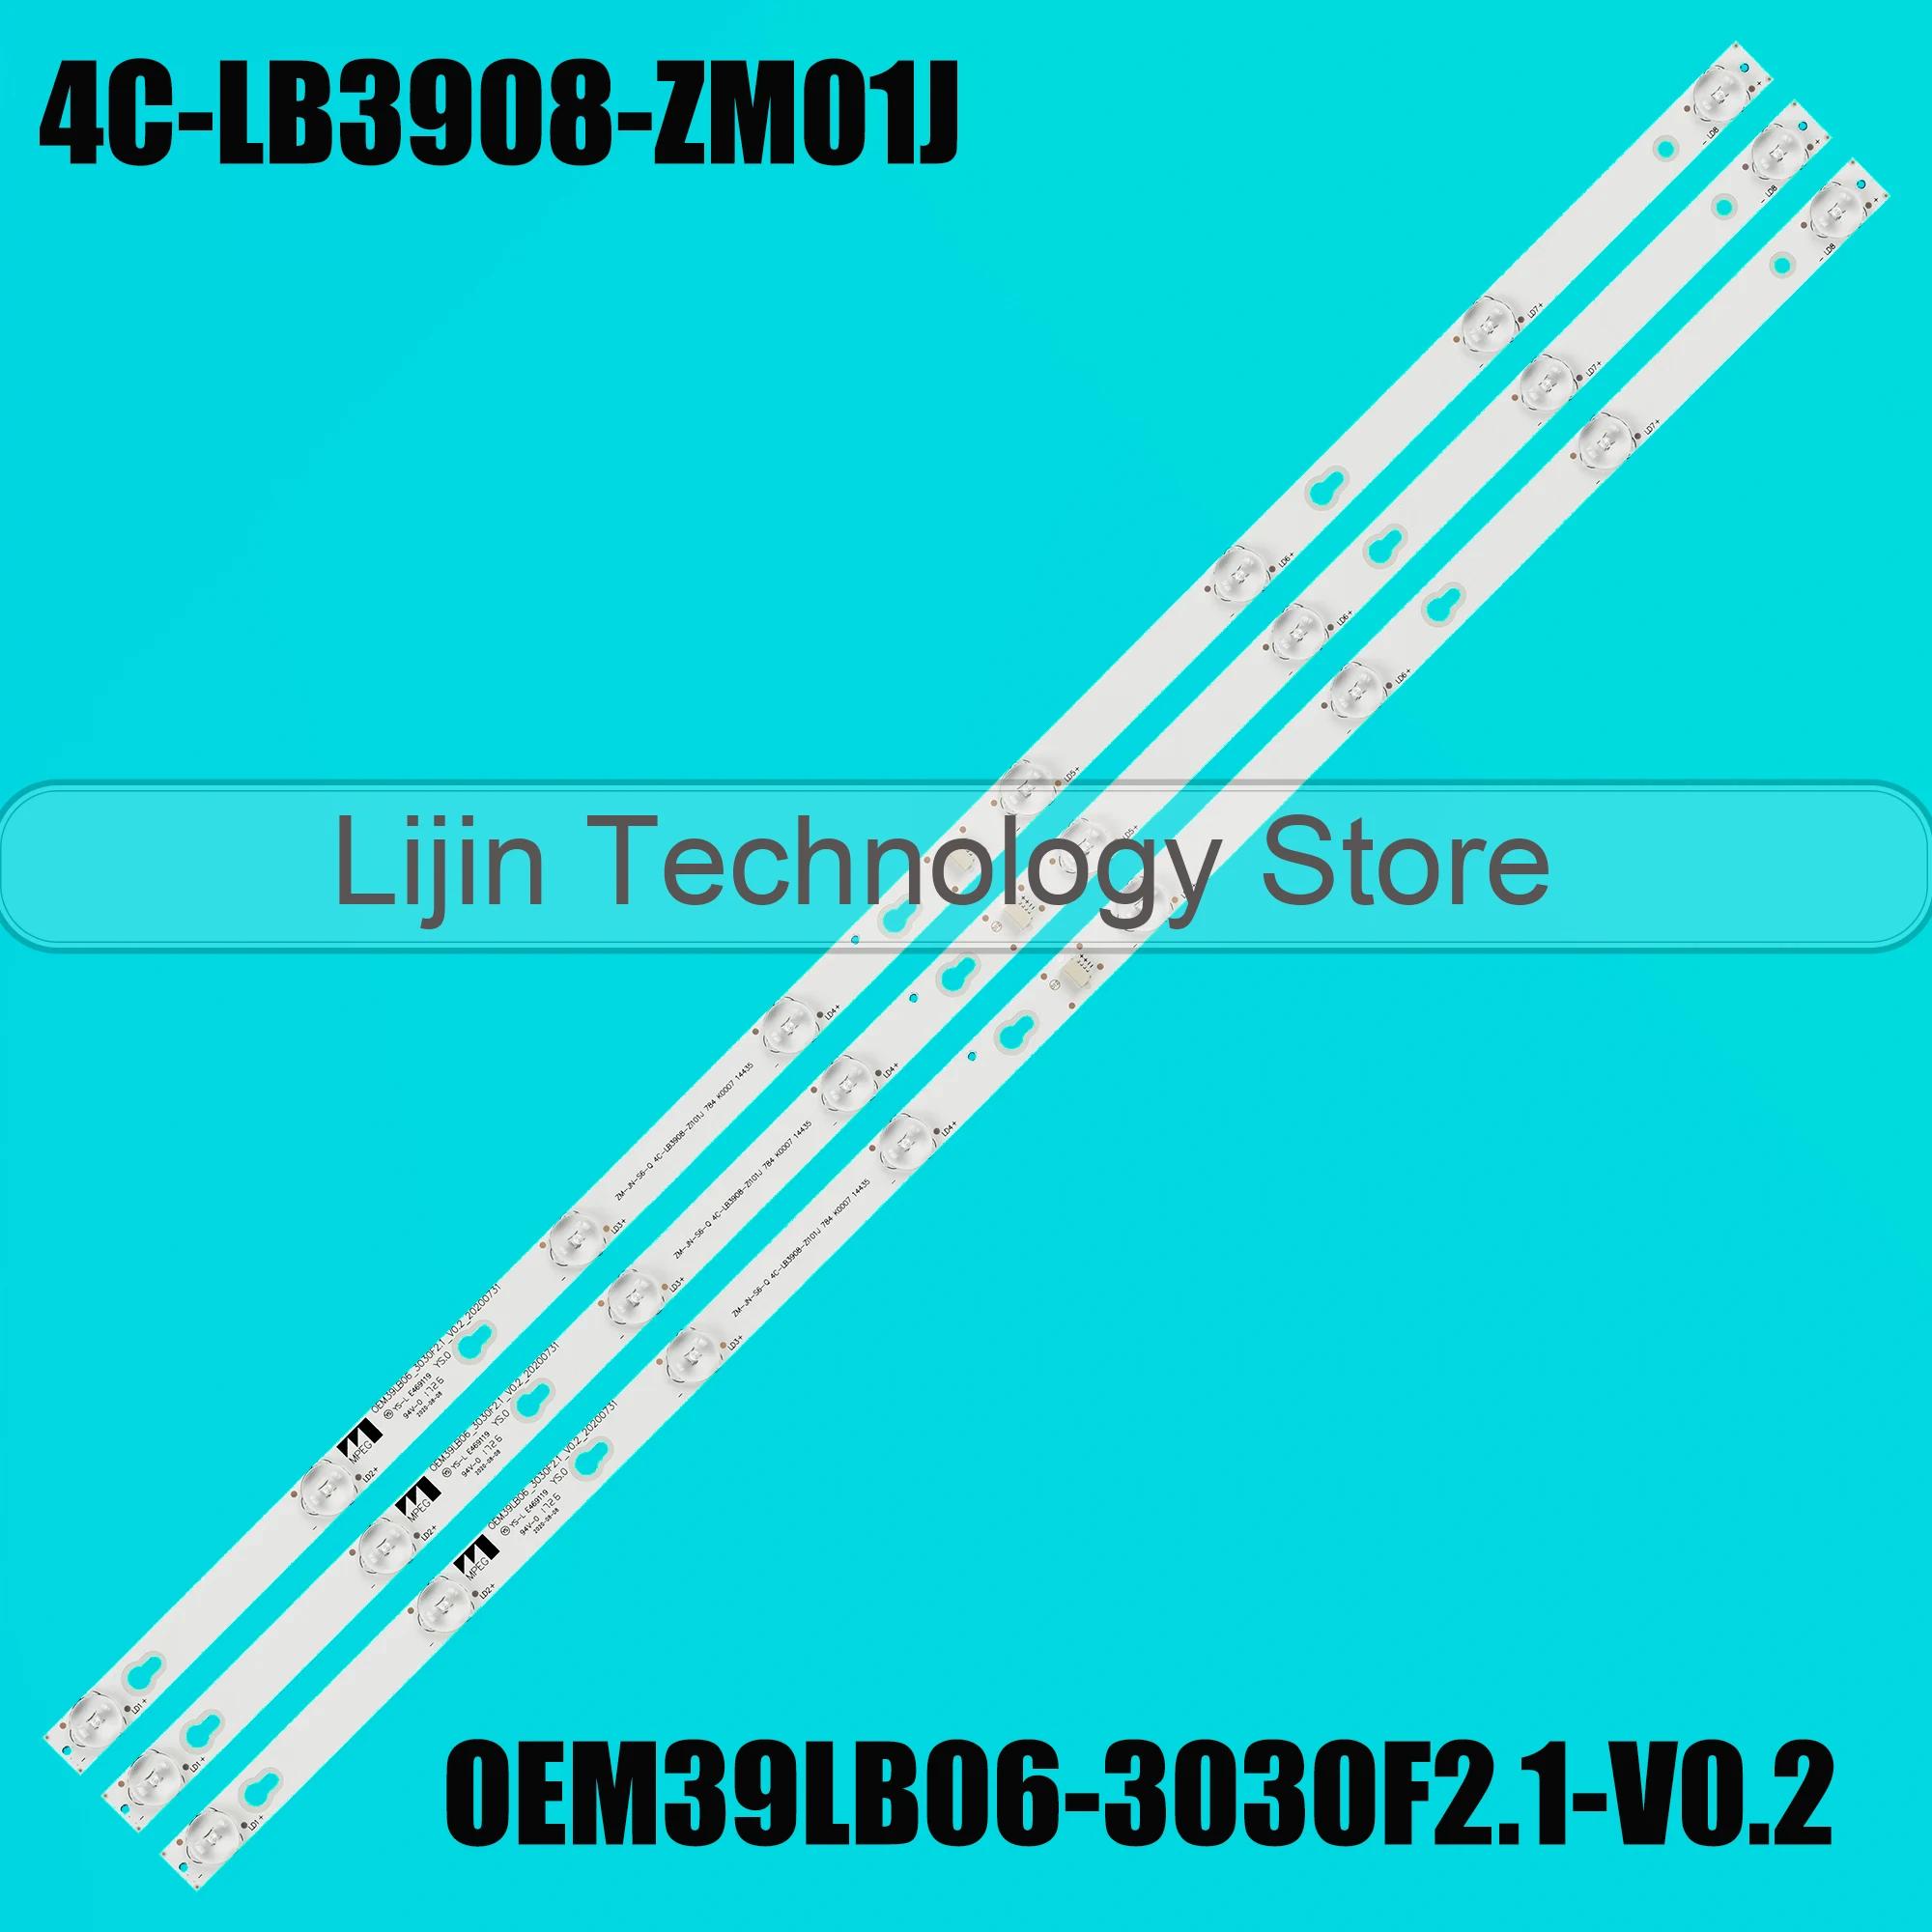 OEM39LB06-3030F2.1-V0.2 LED Ʈ, 4C-LB3908-ZM01J, L39S4900FS, L39S4900, 39L2650C